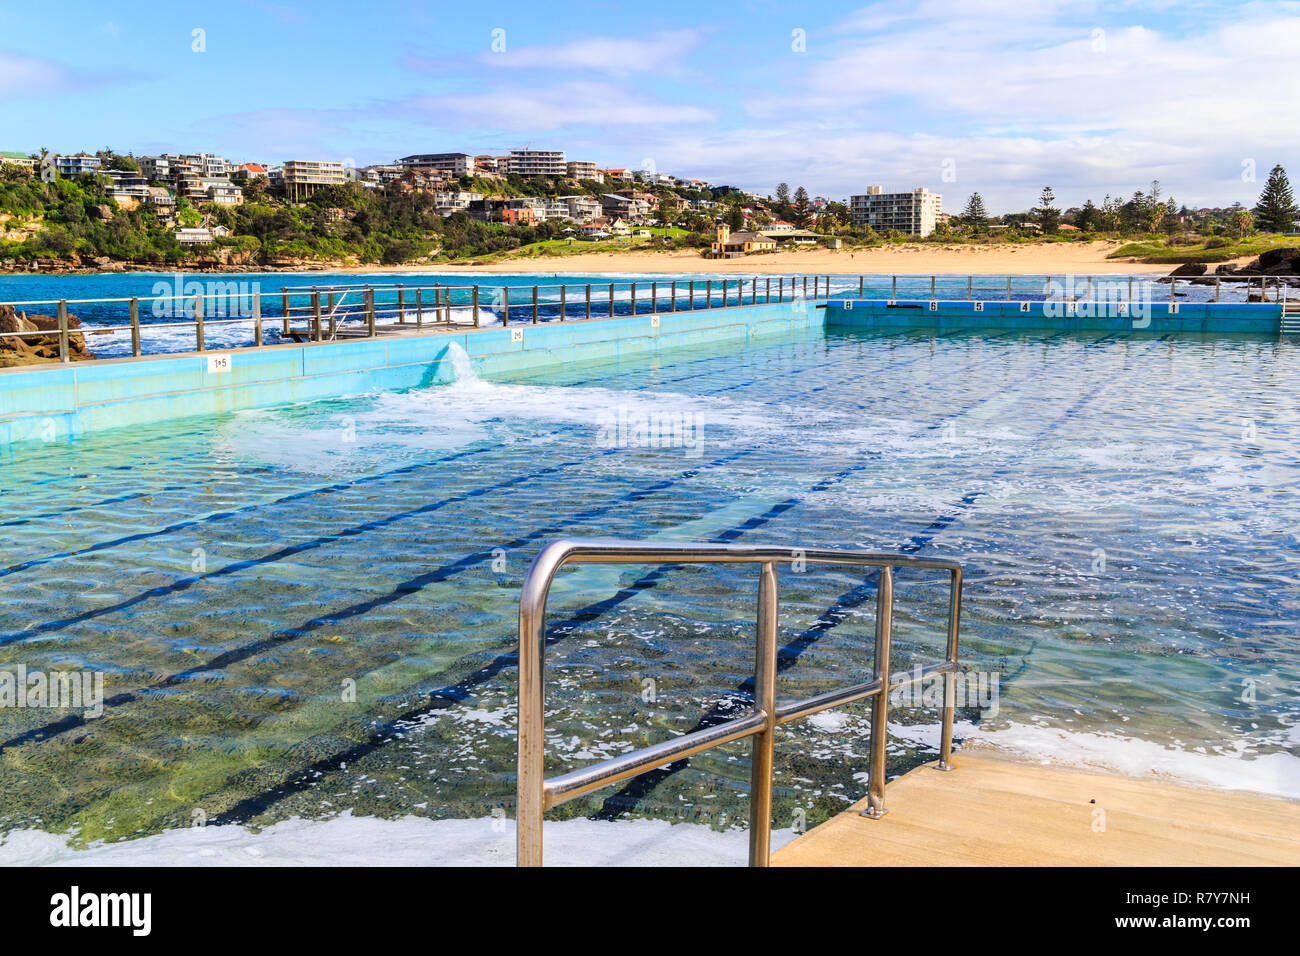 Piscine extérieure d'eau salée. Freshwater Bay, New South Wales, NSW, Australie Banque D'Images